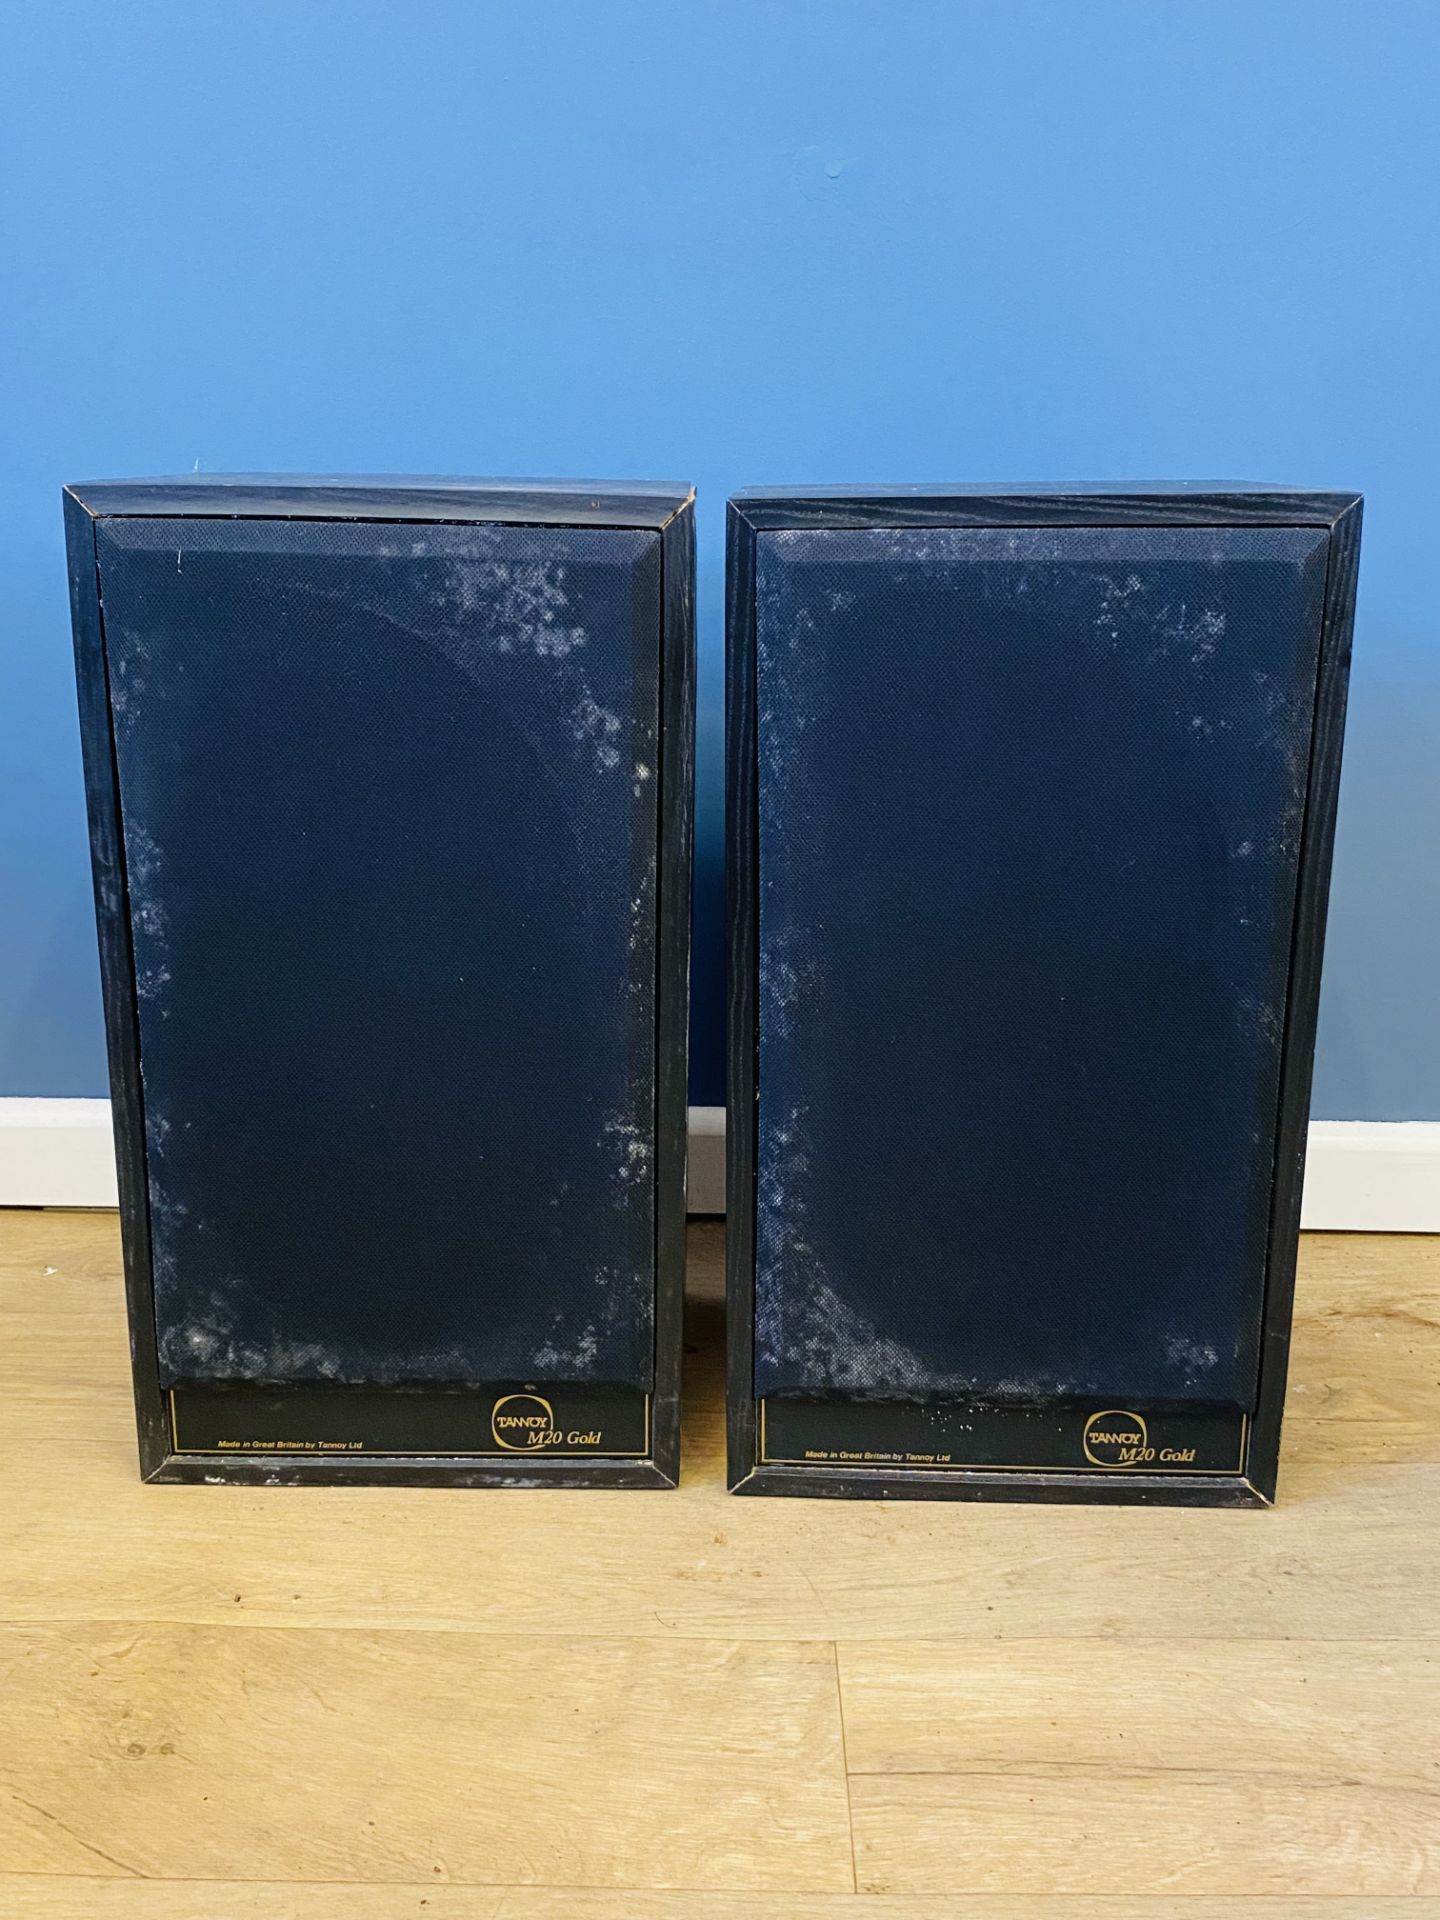 Pair of Tannoy Mercury M20 Gold speakers